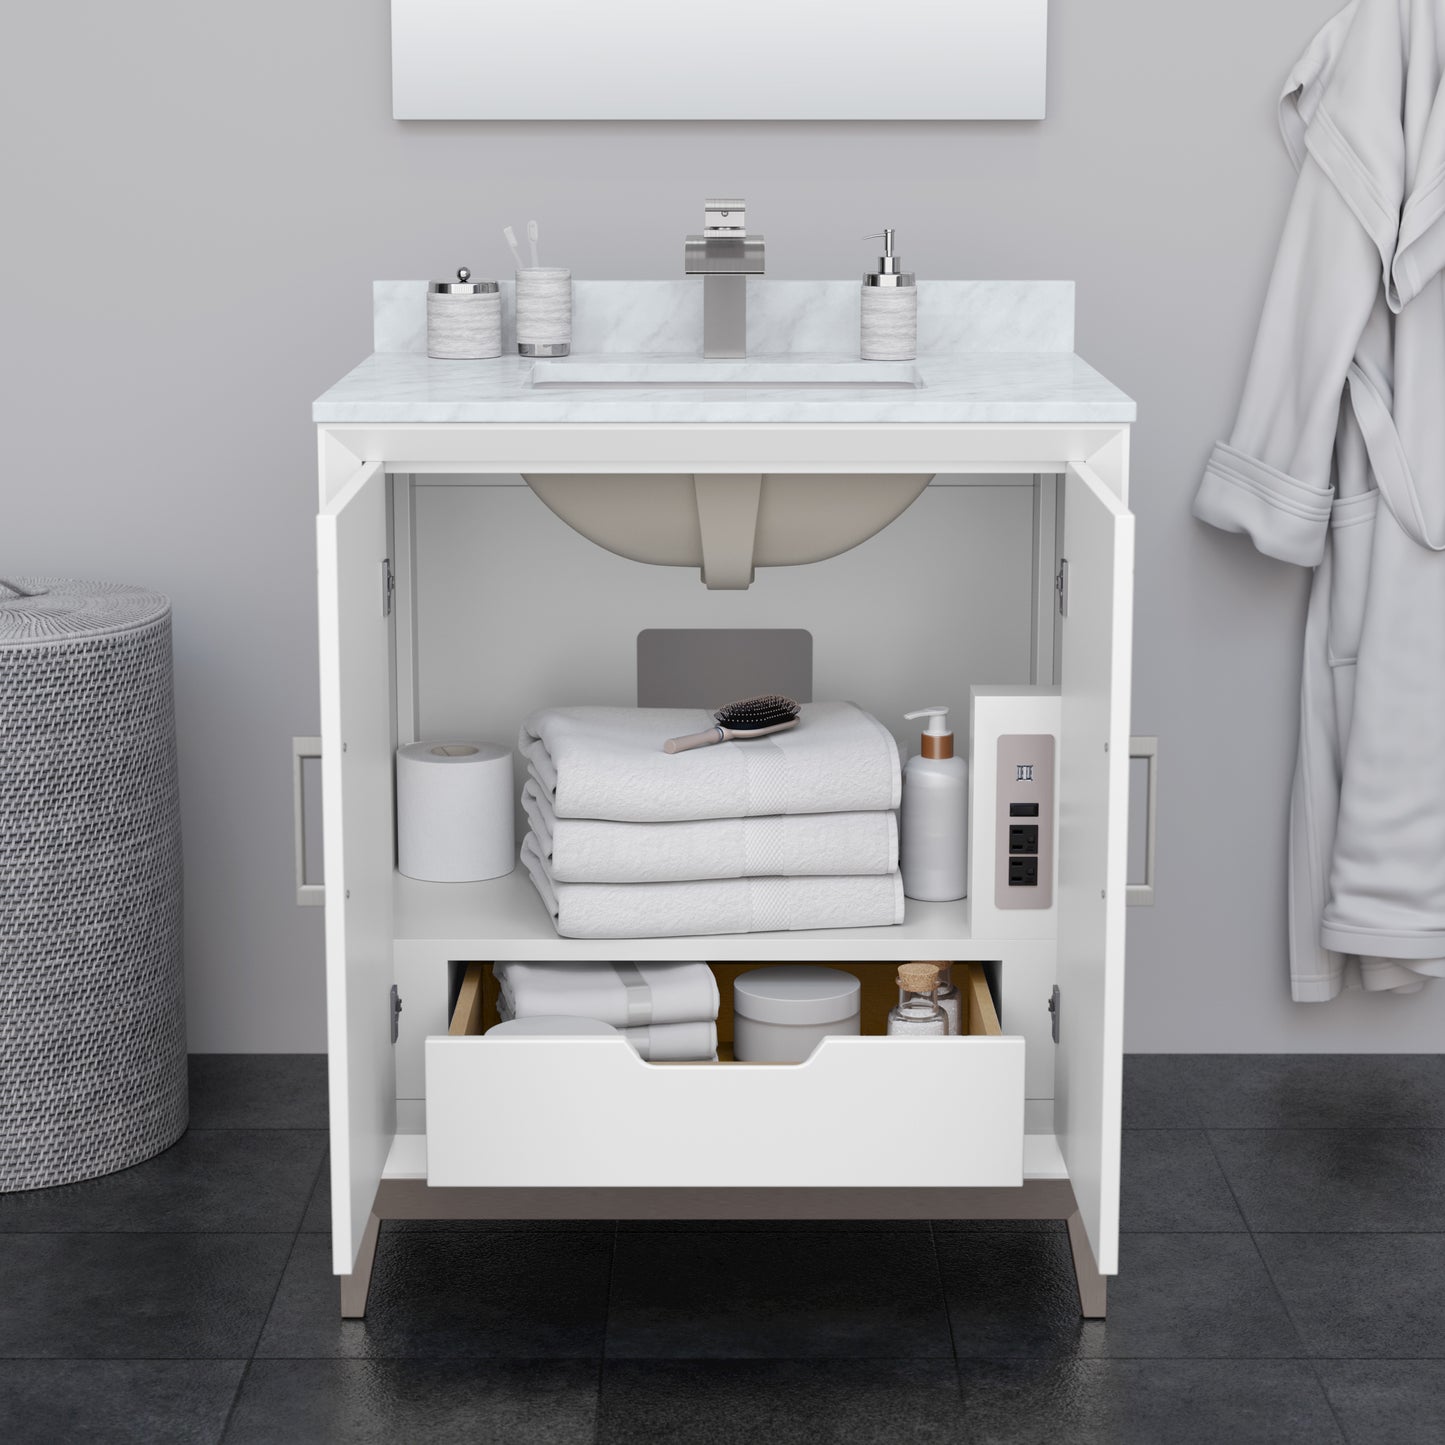 Wyndham Marlena 30 Inch Single Bathroom Vanity with White Carrara Marble Countertop and Sink - Luxe Bathroom Vanities